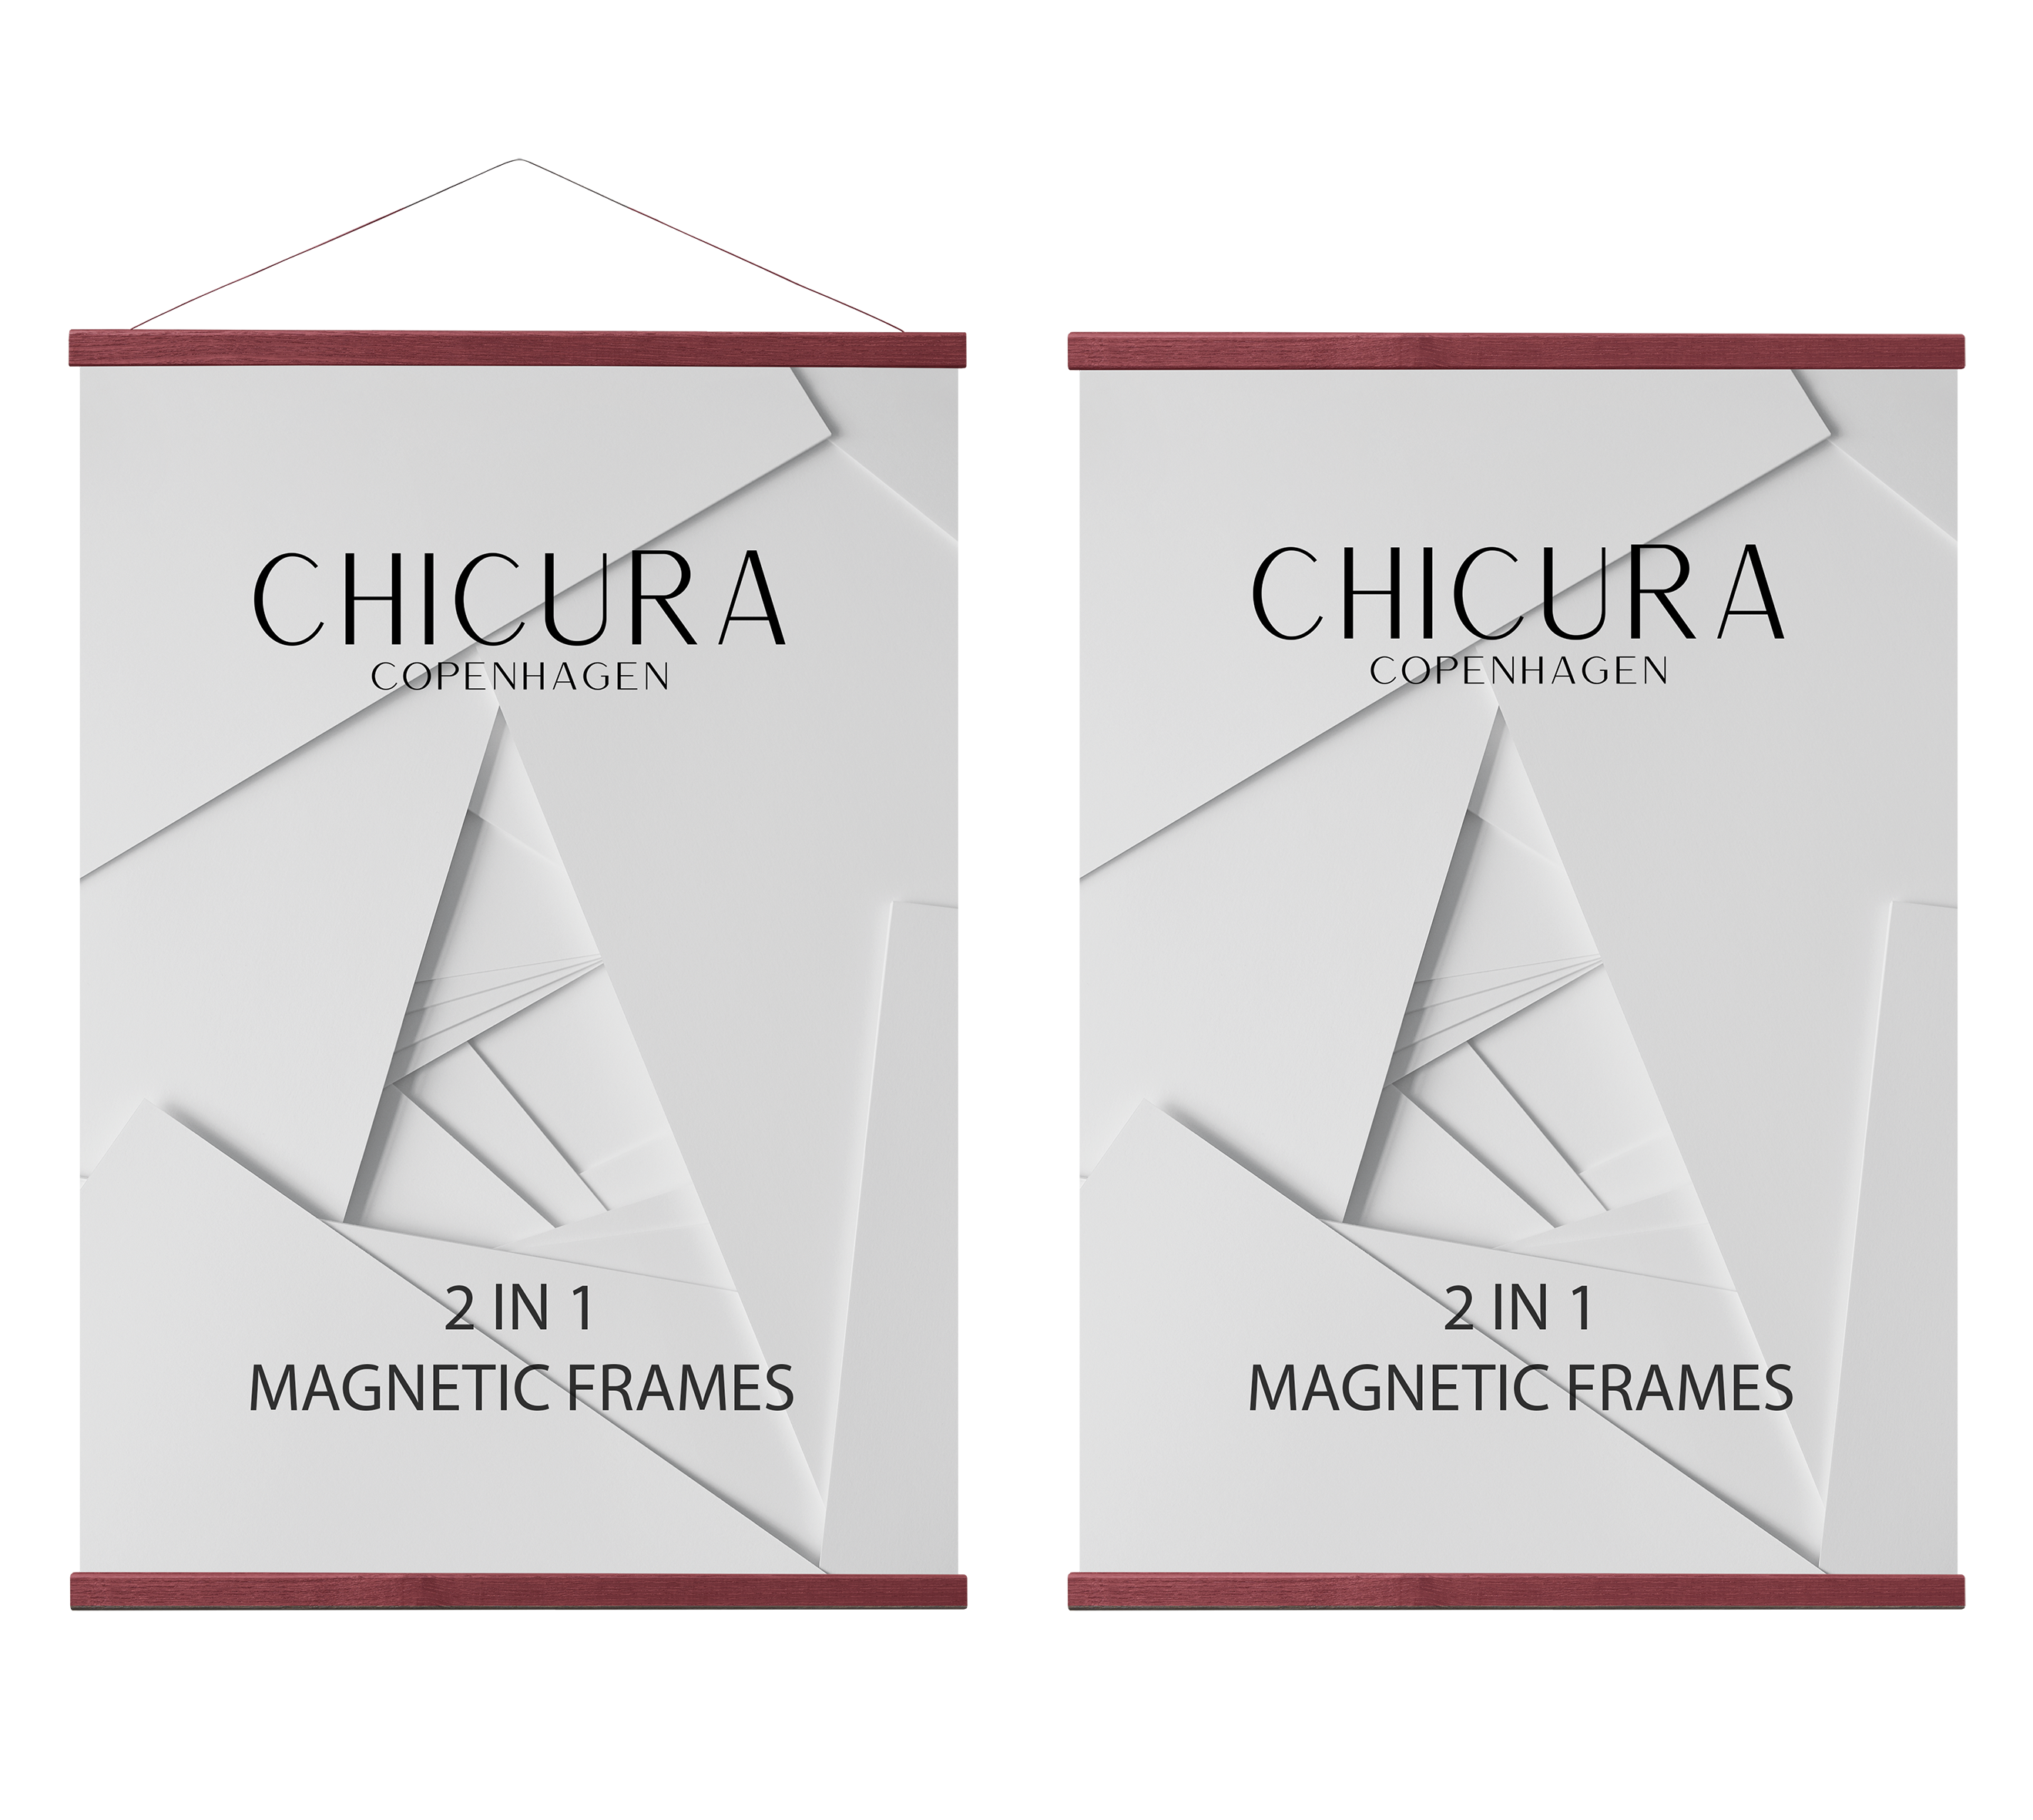 2 in 1 Magnetic Frame - 51 cm - Red - ChiCura Copenhagen DK -